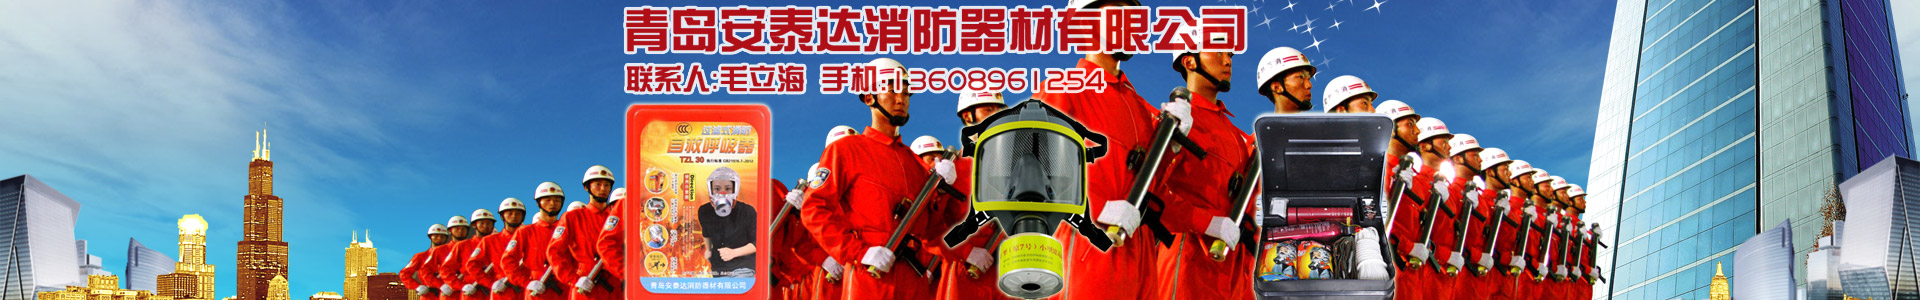 行業新聞-青島安泰達消防器材有限公司-